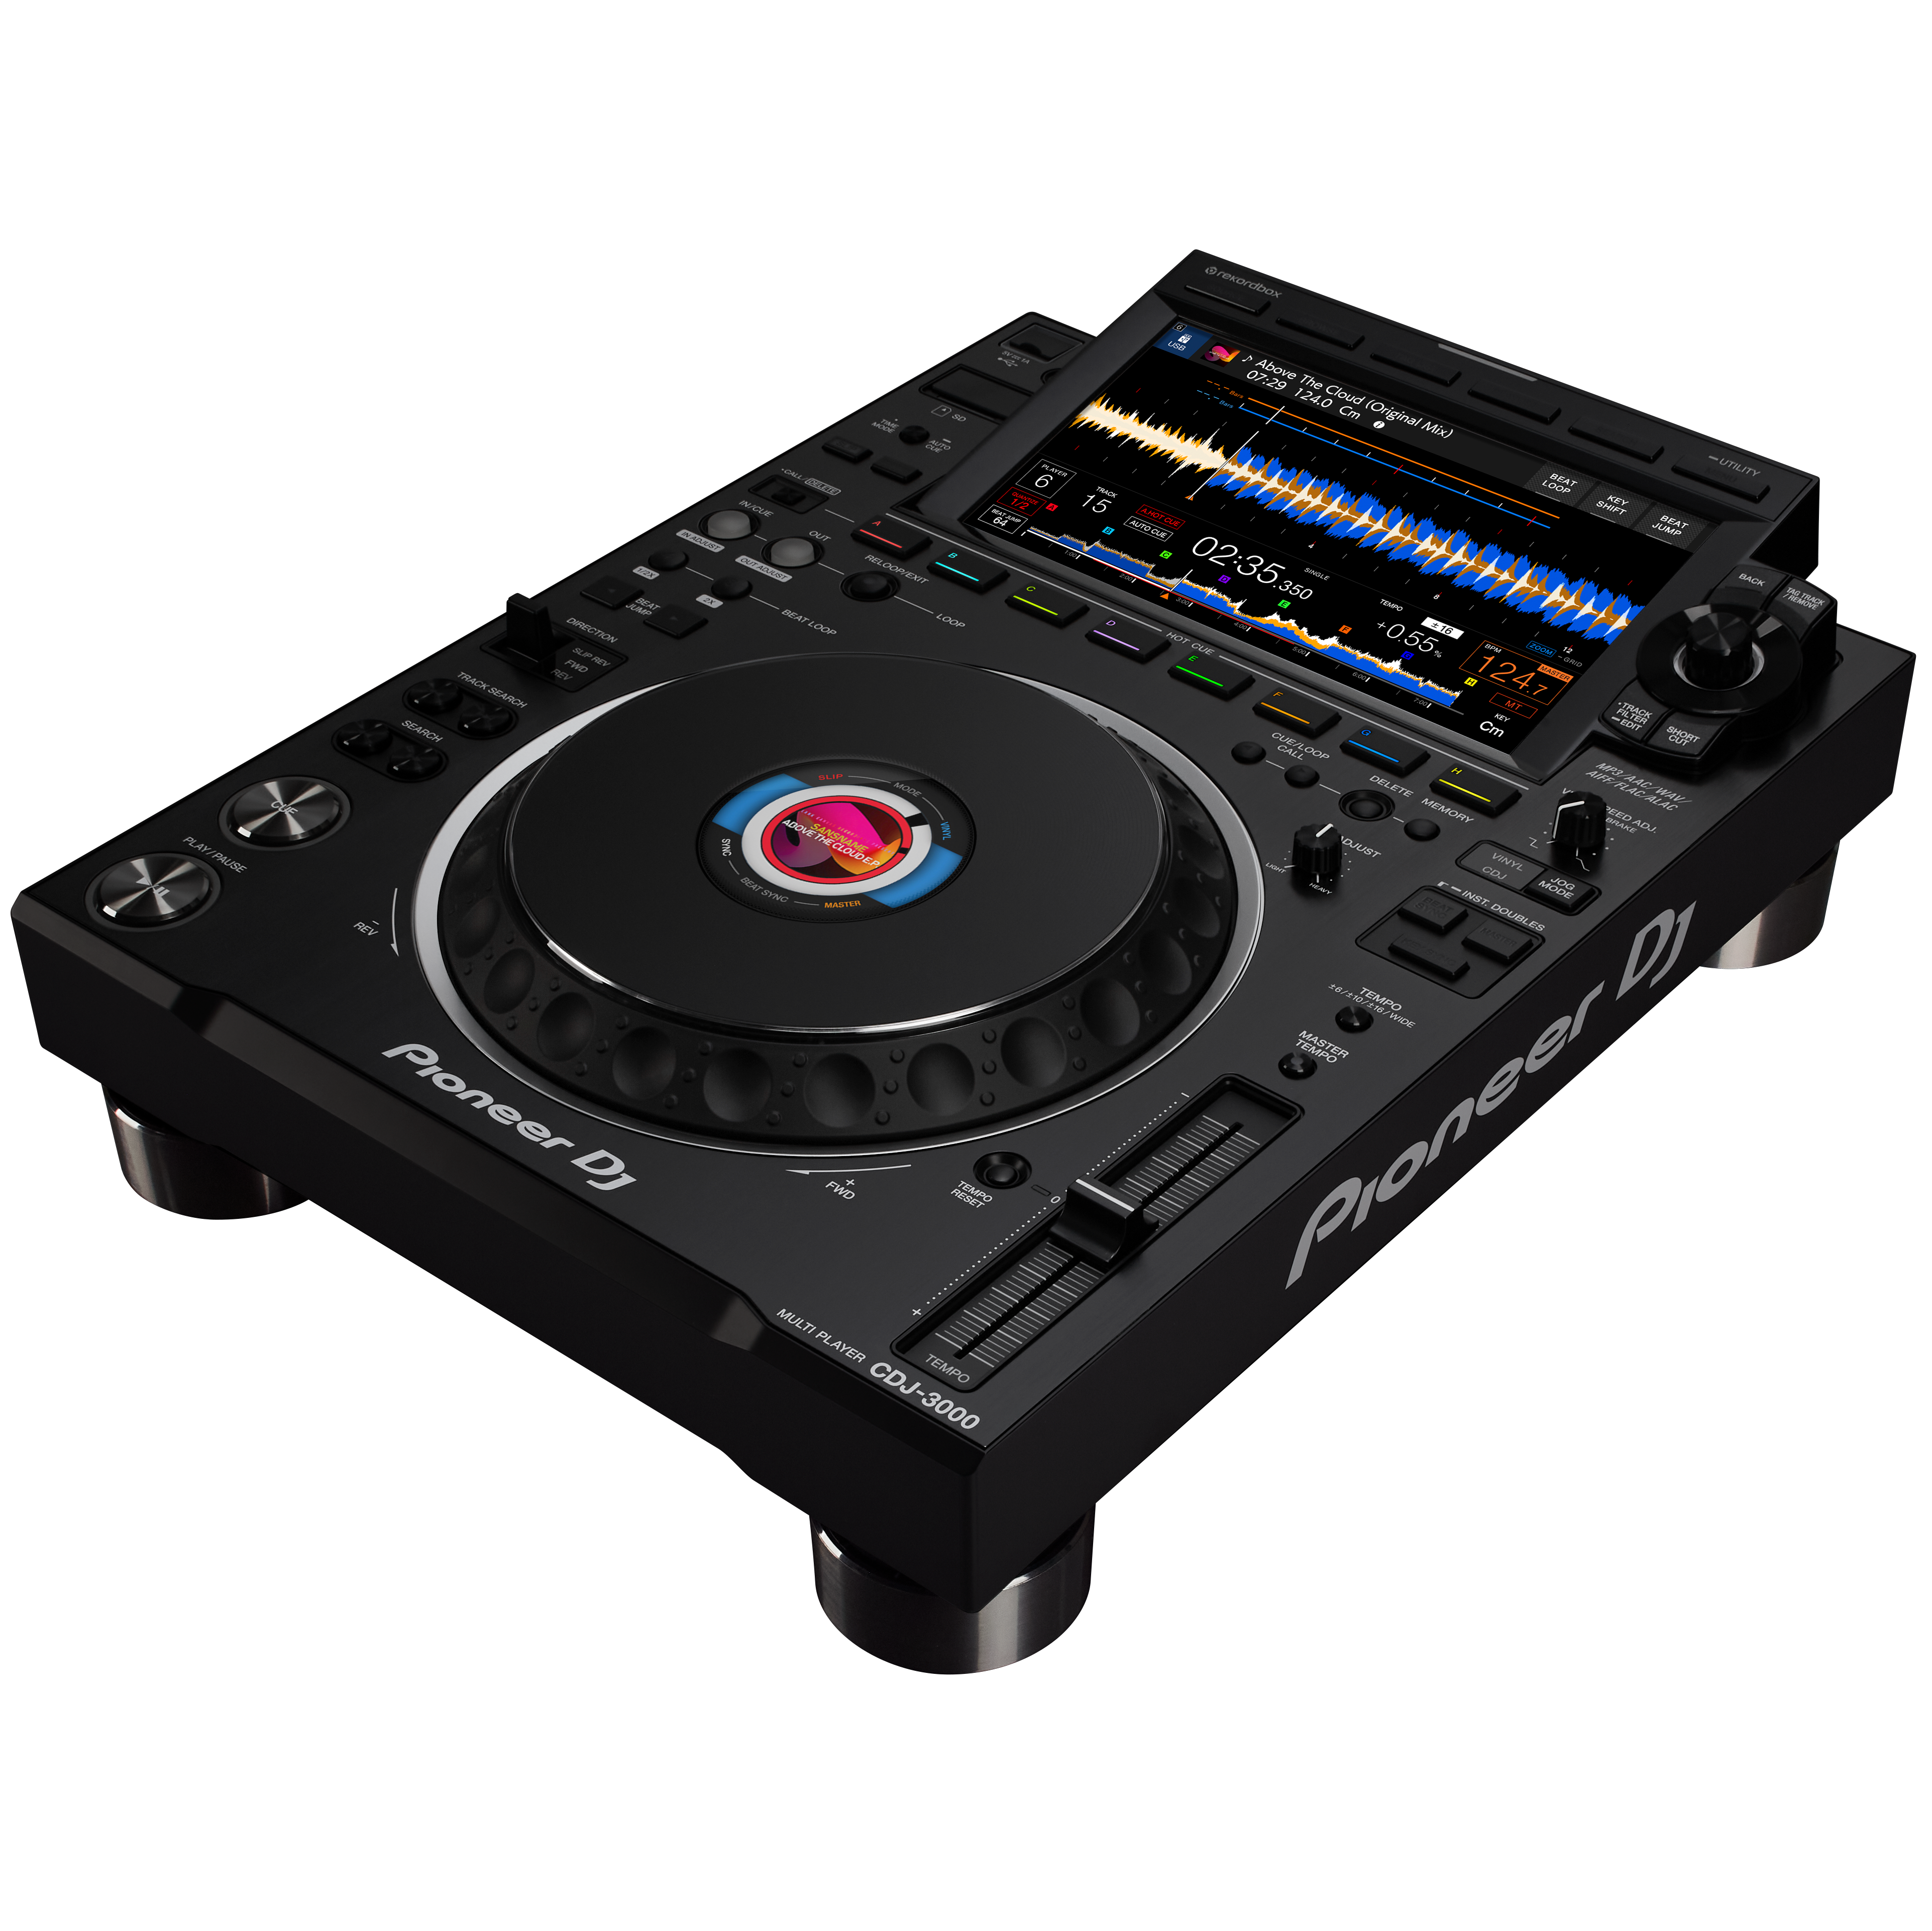 Pioneer DJ CDJ-3000 tourPack with BYFP ipCase